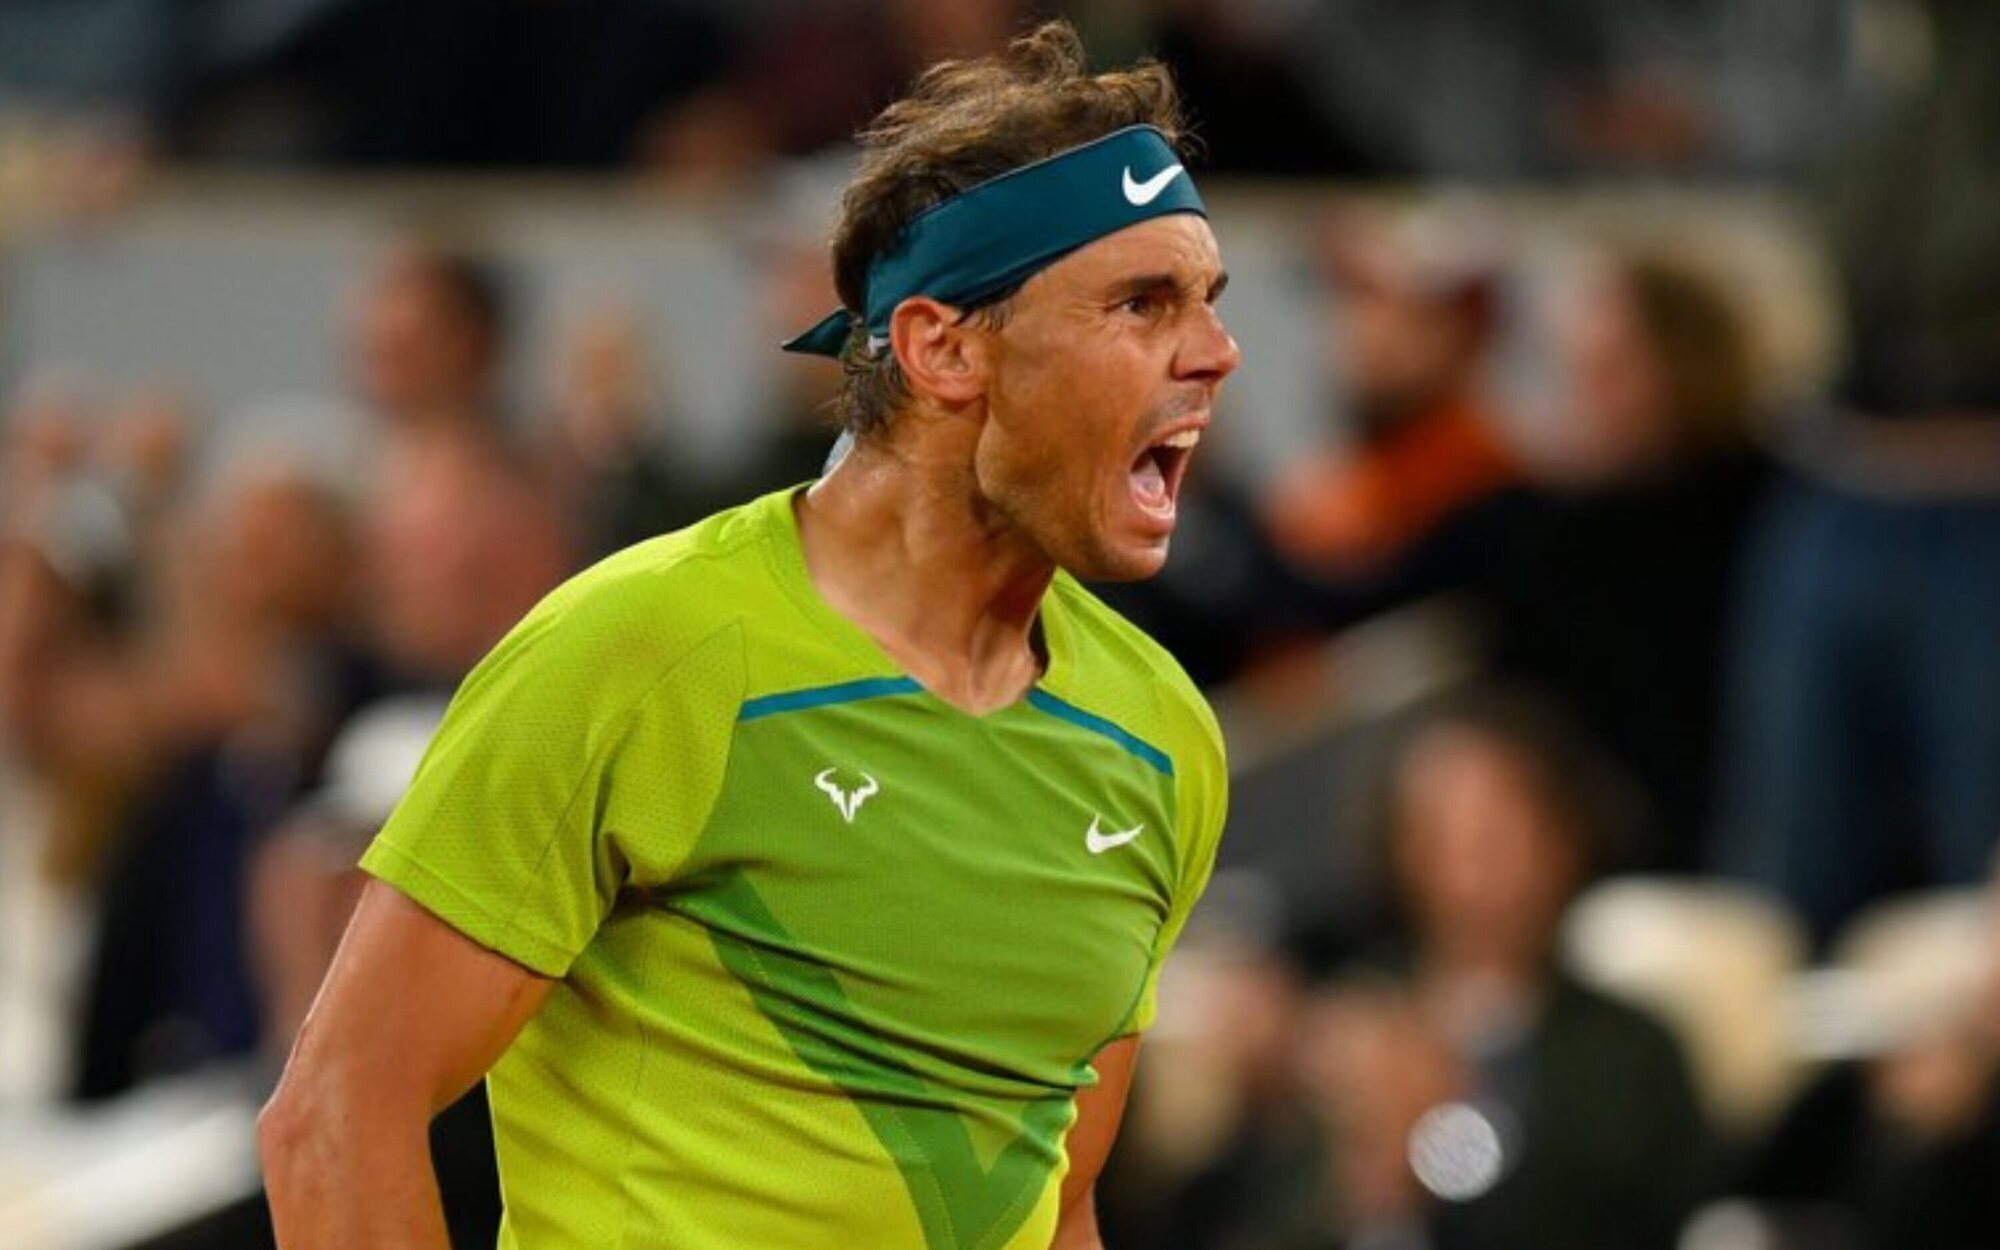 El tenis del Roland Garros en DMAX sobresale con el juego de Rafael Nadal contra Zverev 